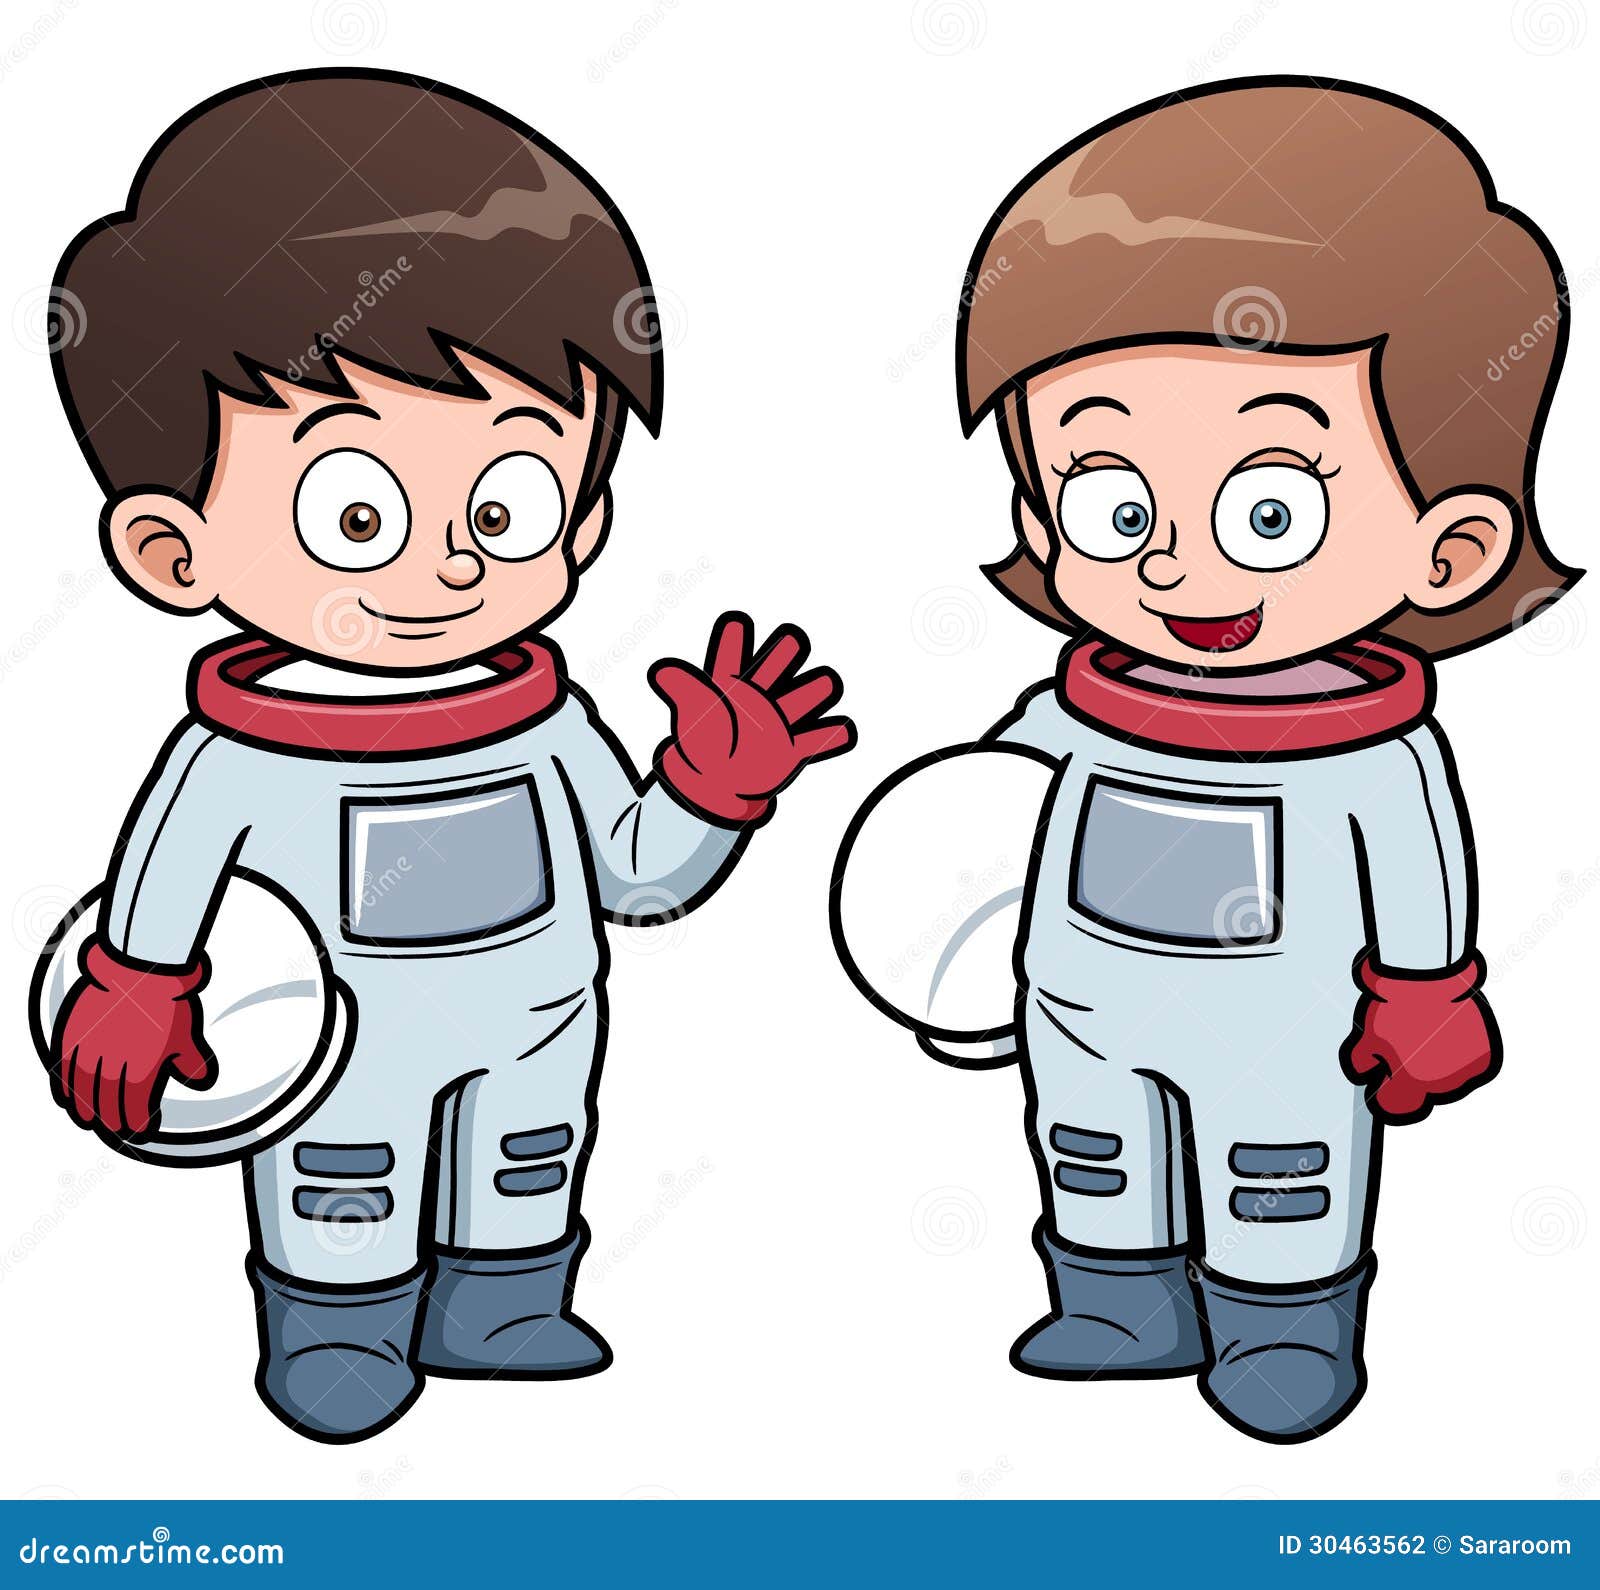 Cartoon astronaut kids stock vector. Illustration of ...